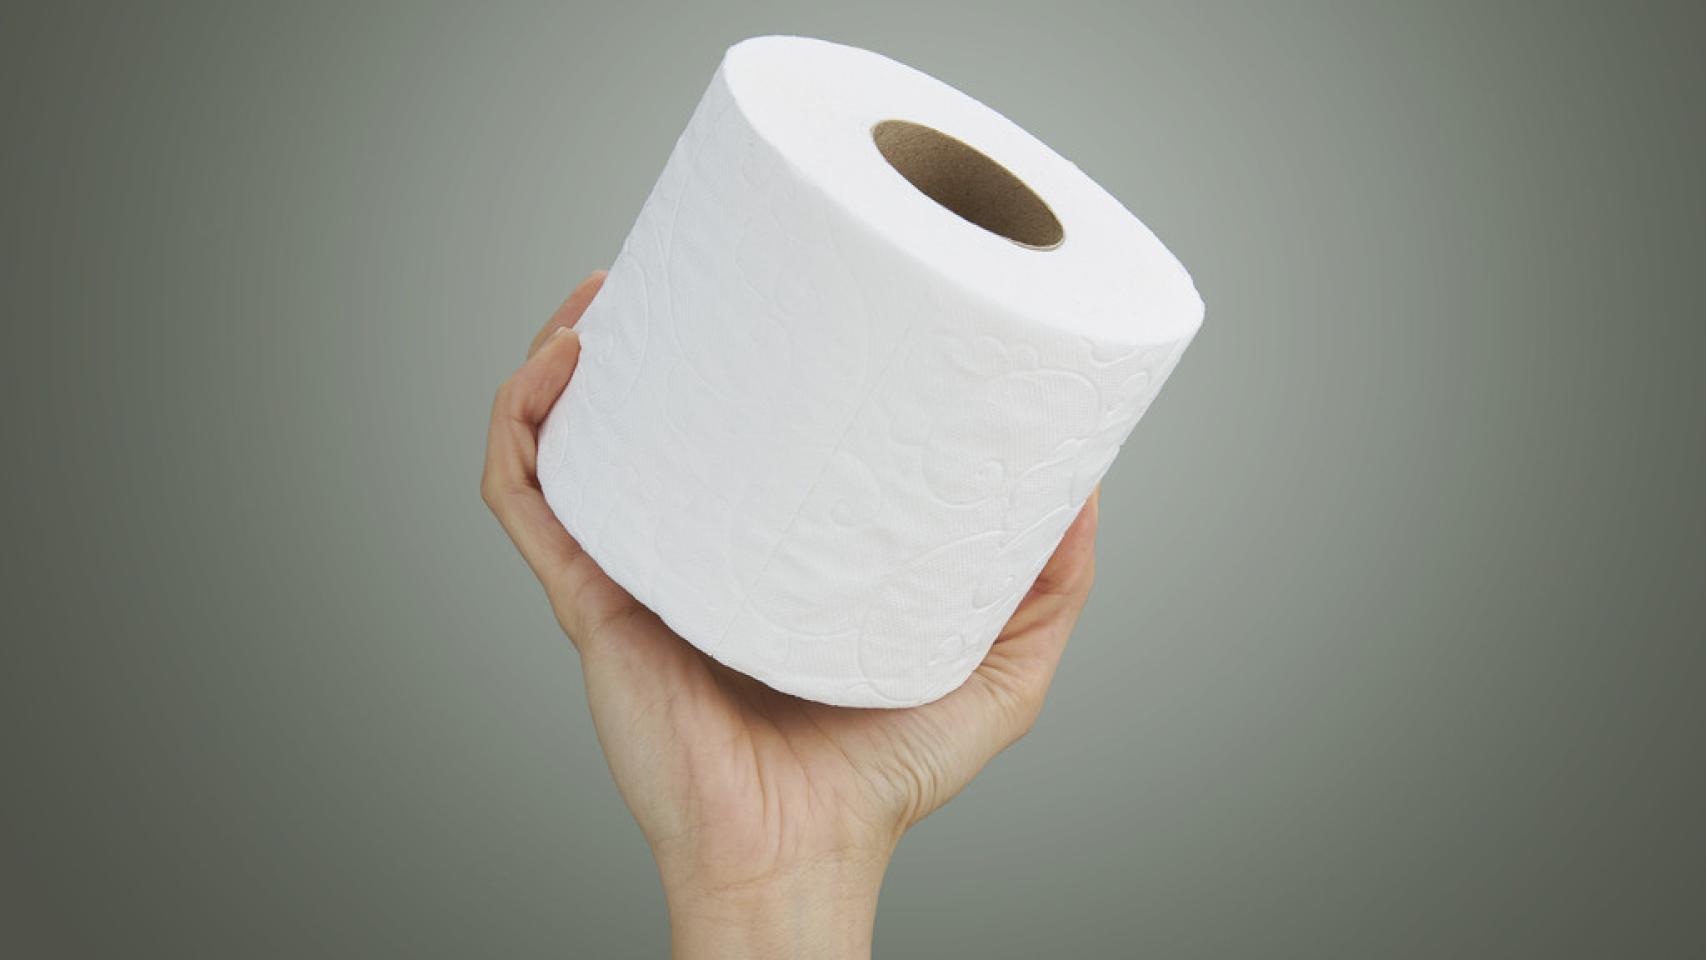 Por qué hay países en los que no se utiliza papel higiénico?